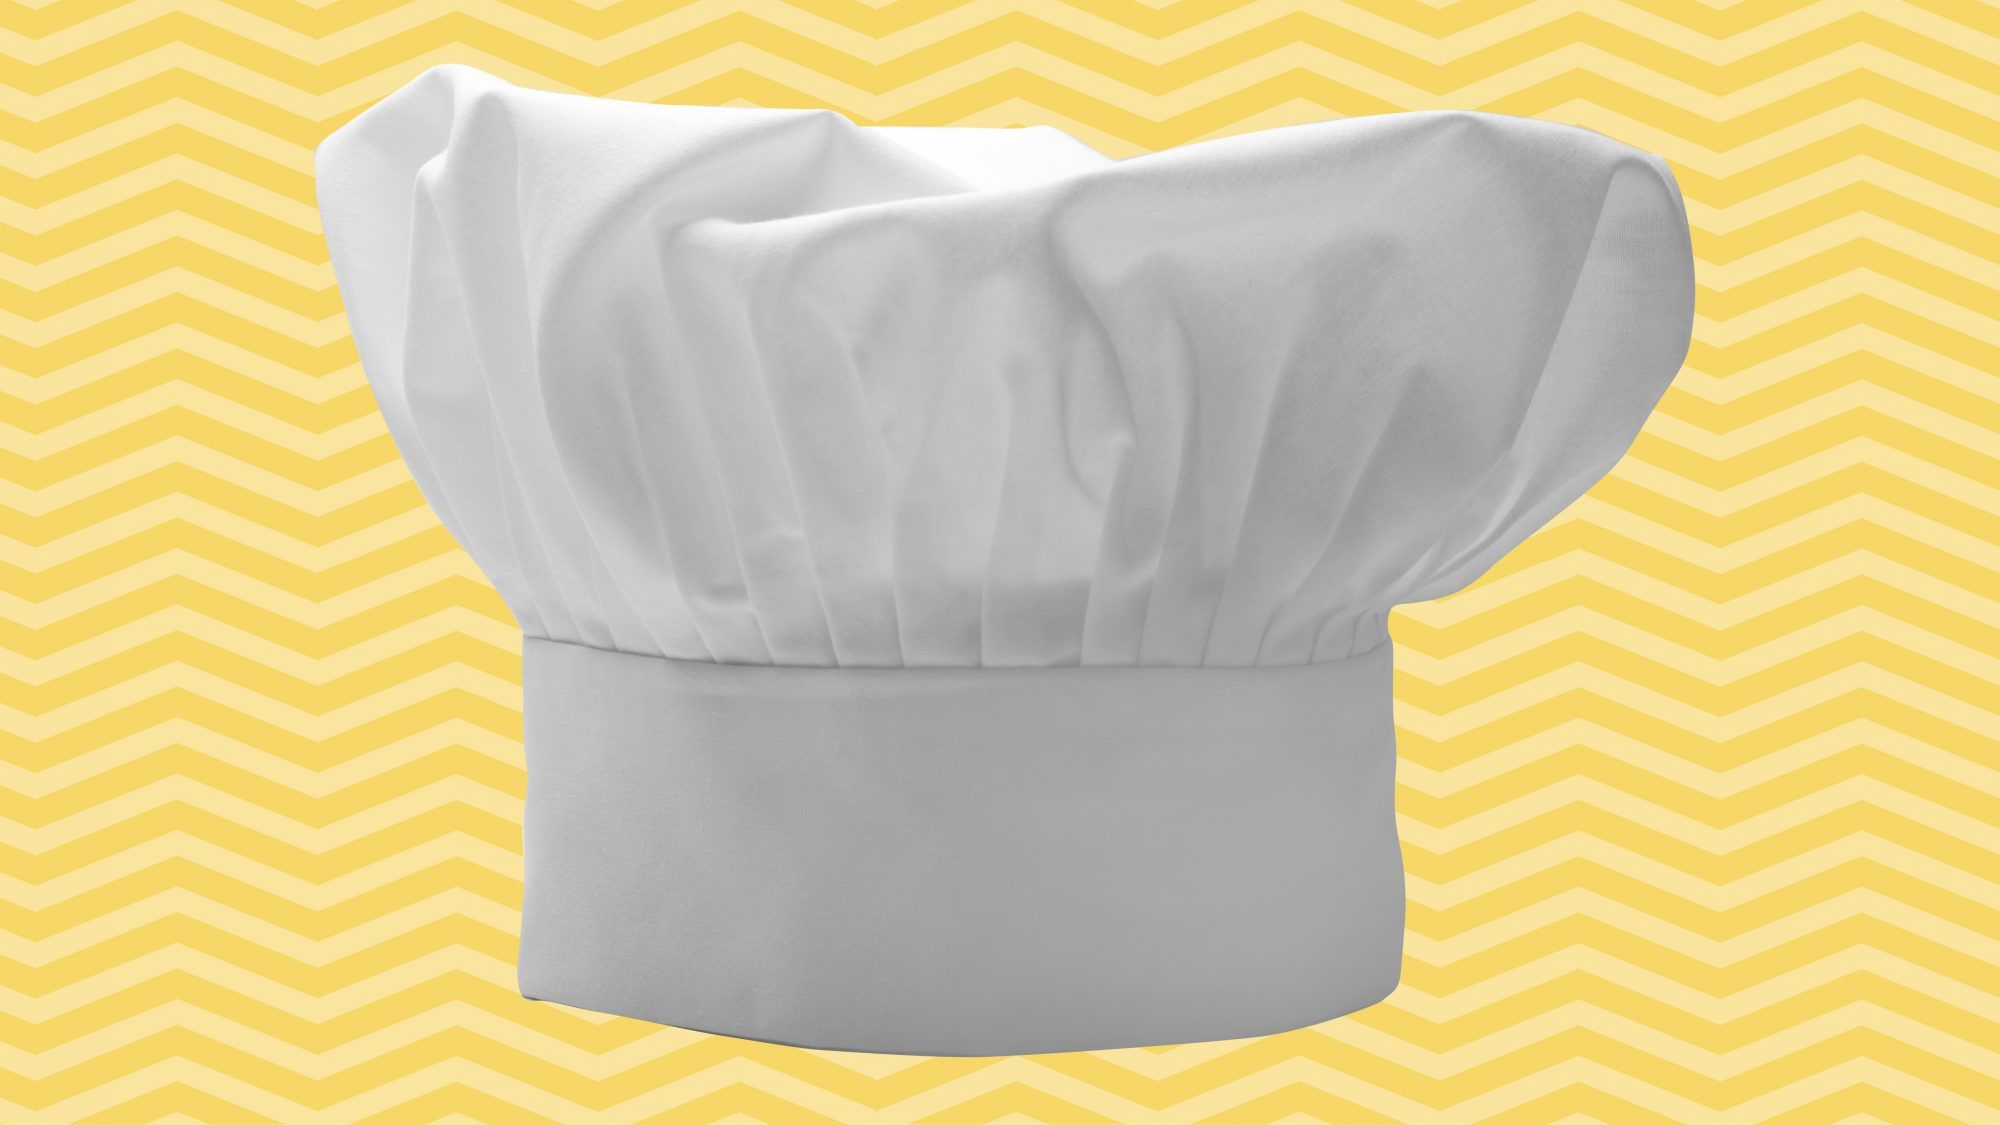 10 შეცვლილი ცხოვრებისეული გაკვეთილი, რომელიც კულინარიულ სკოლაში ვისწავლე, რომელიც ყველა სახლის მზარეულმა უნდა იცოდეს